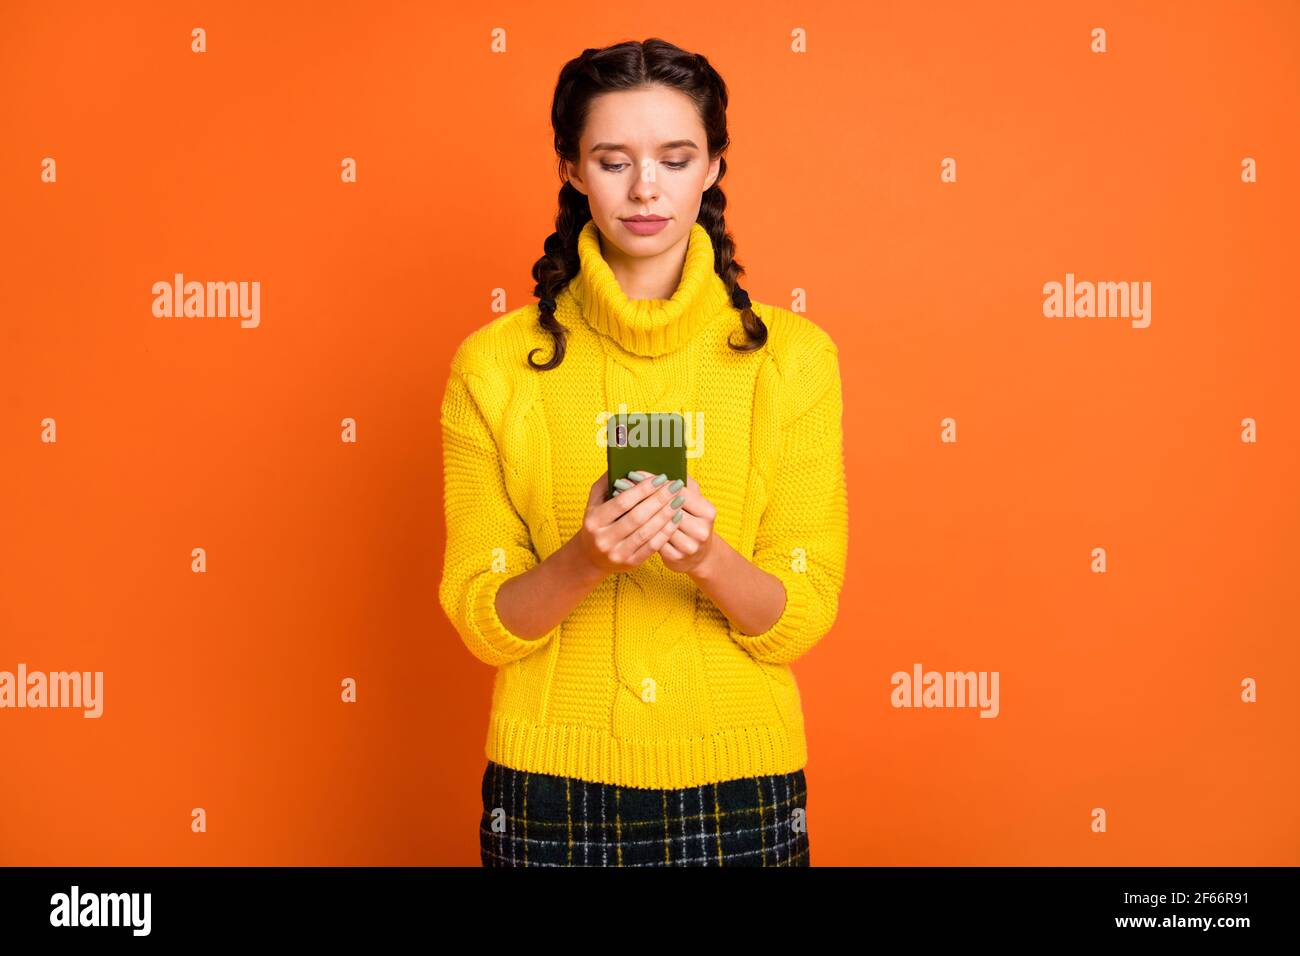 Photo de joli jeune look mains tenir le téléphone port pull knitter isolé sur fond orange Banque D'Images